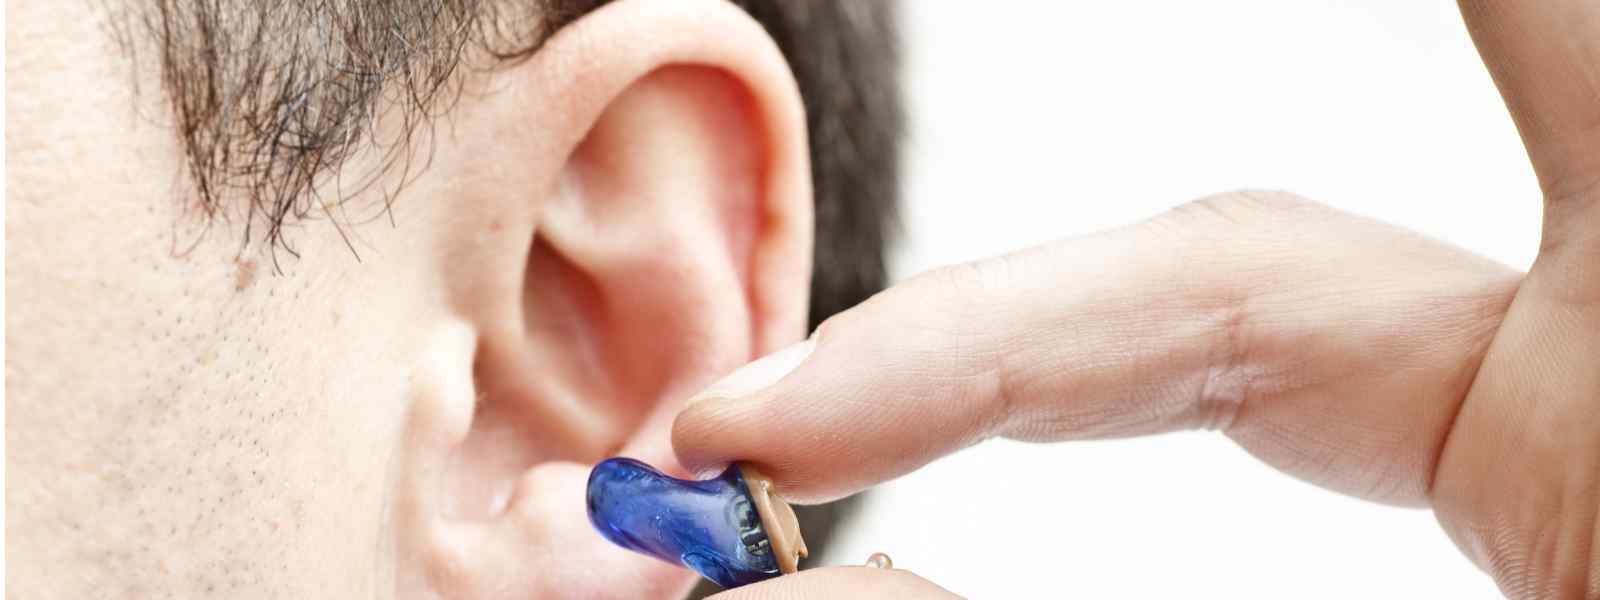 A hearing aid